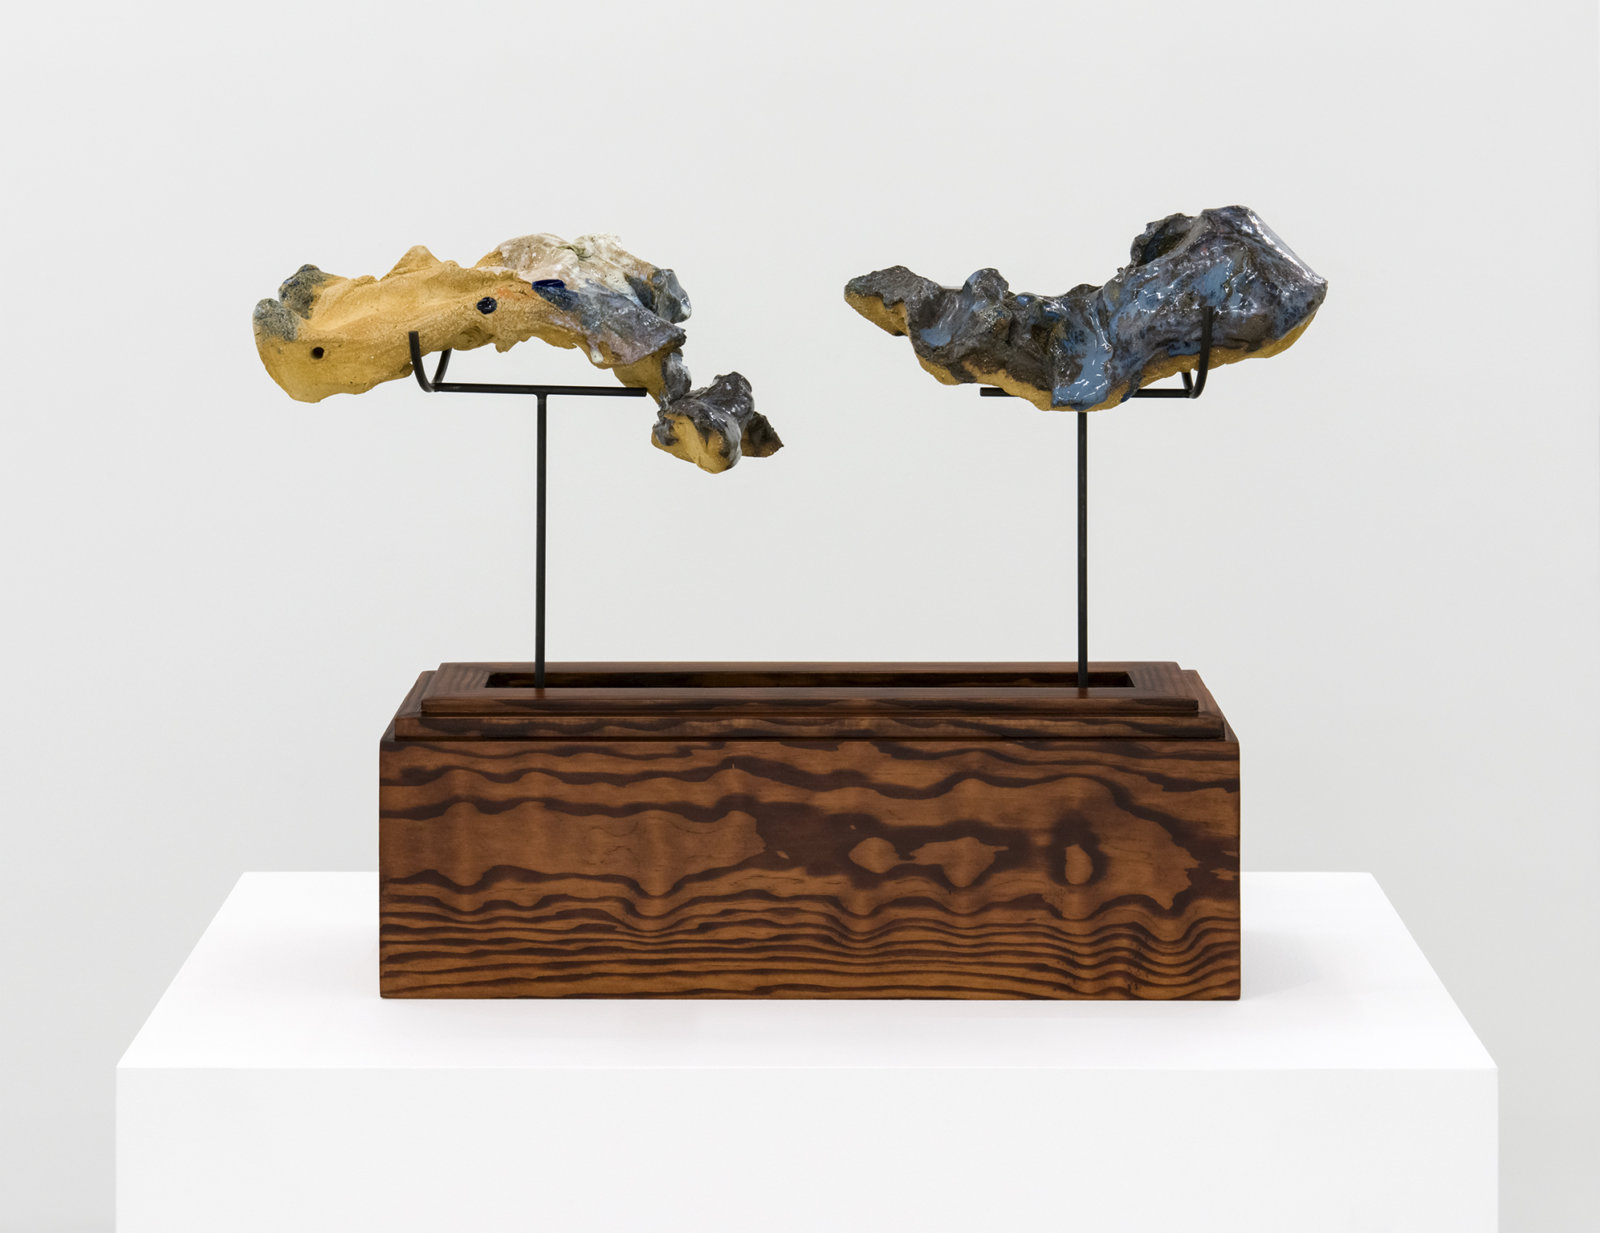 Damian Moppett, Figure in Two, 2016, glazed stoneware, wood, steel, 15 x 20 x 6 in. (39 x 51 x 16 cm)